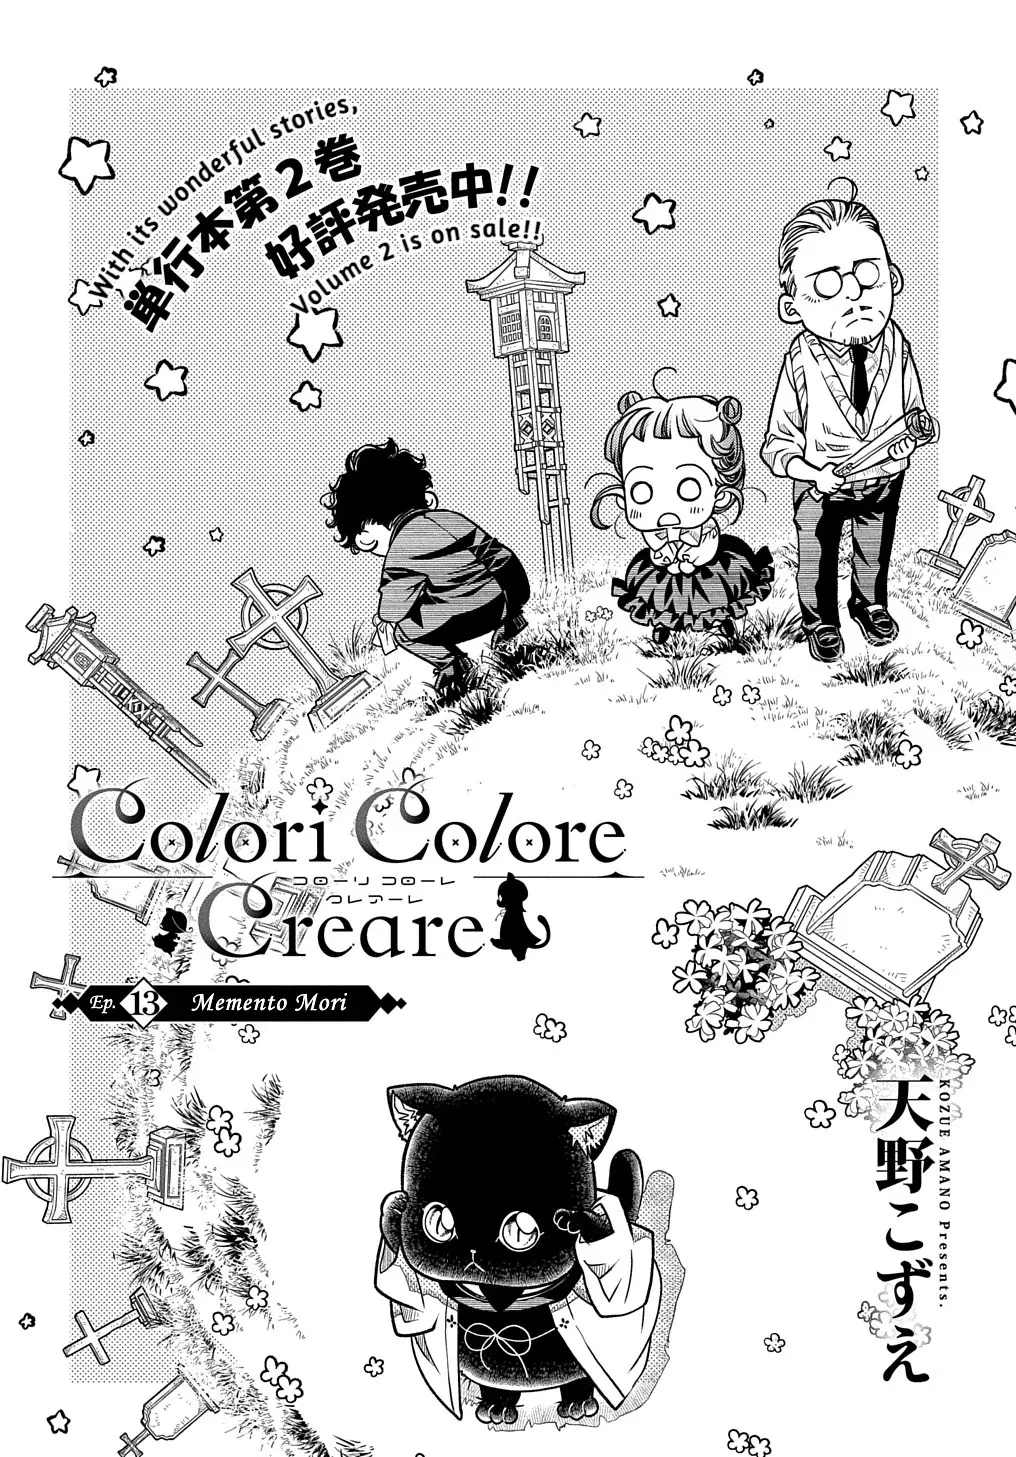 Colori Colore Creare - 13 page 2-10b180f1